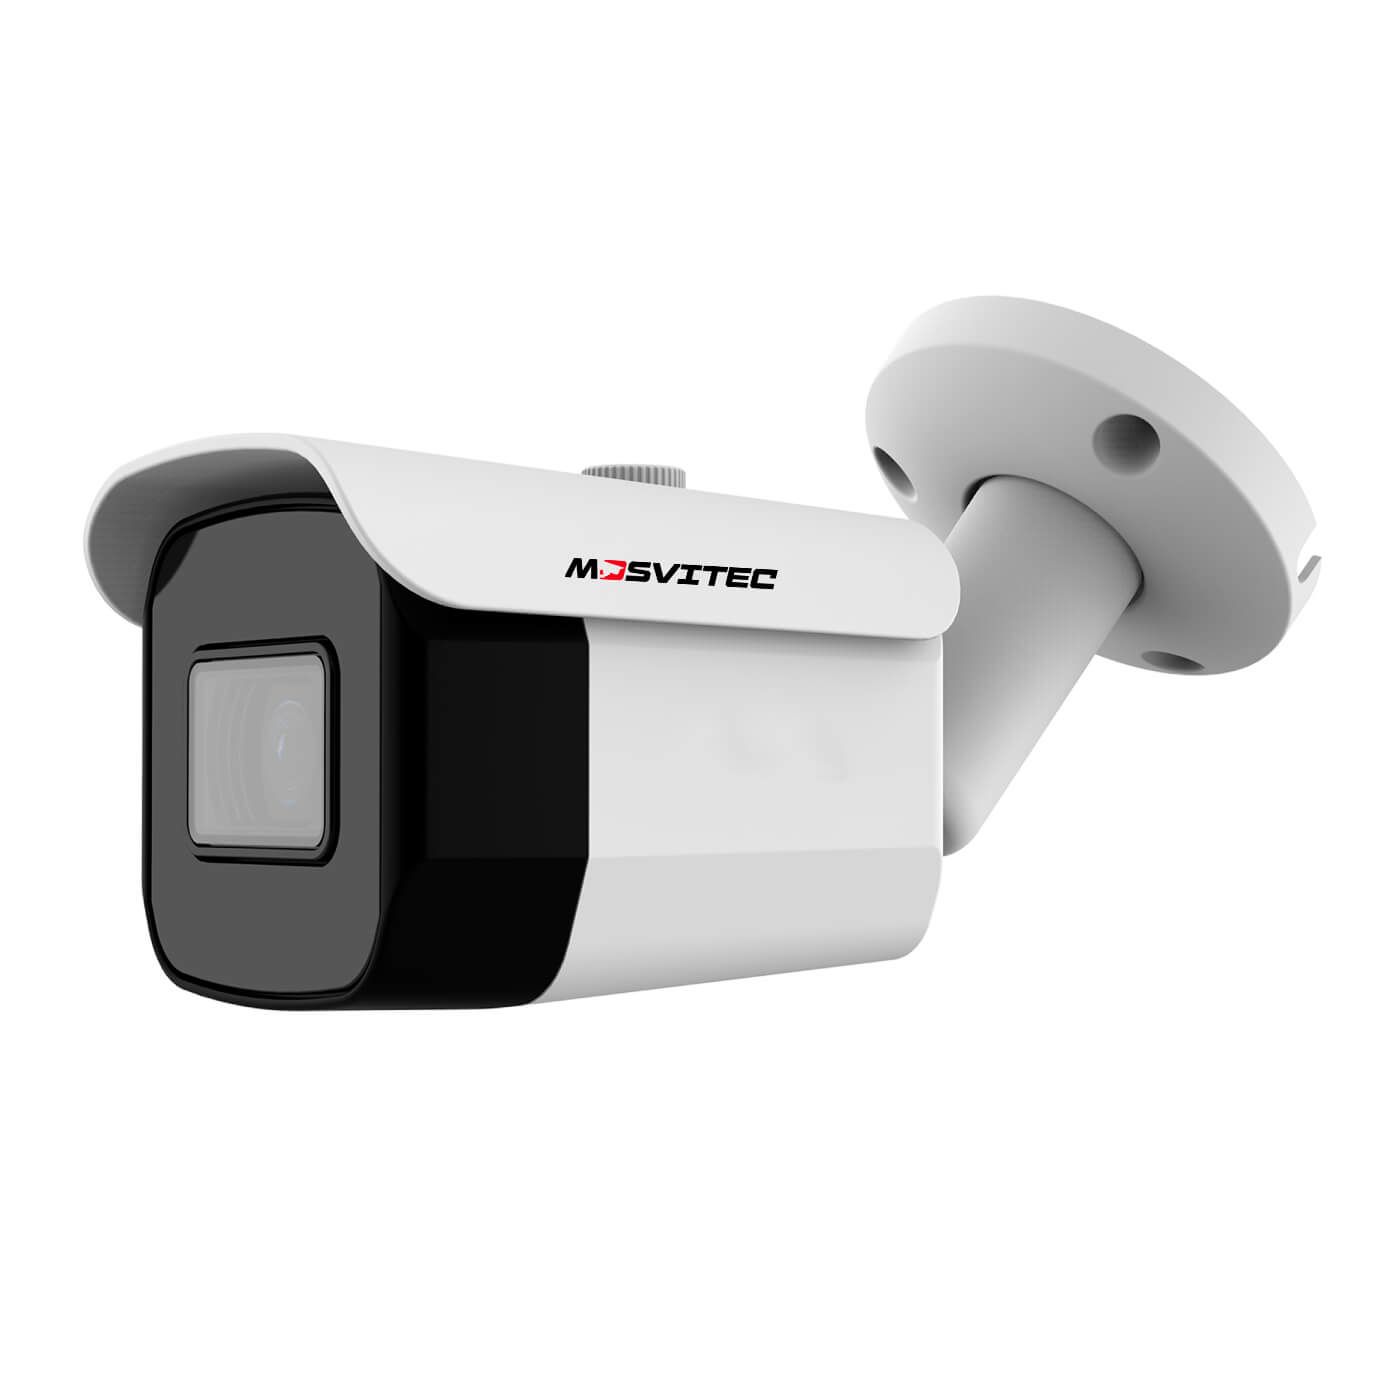 IP комплект видеонаблюдения на 16 камер 5 Мегапикселей PRO